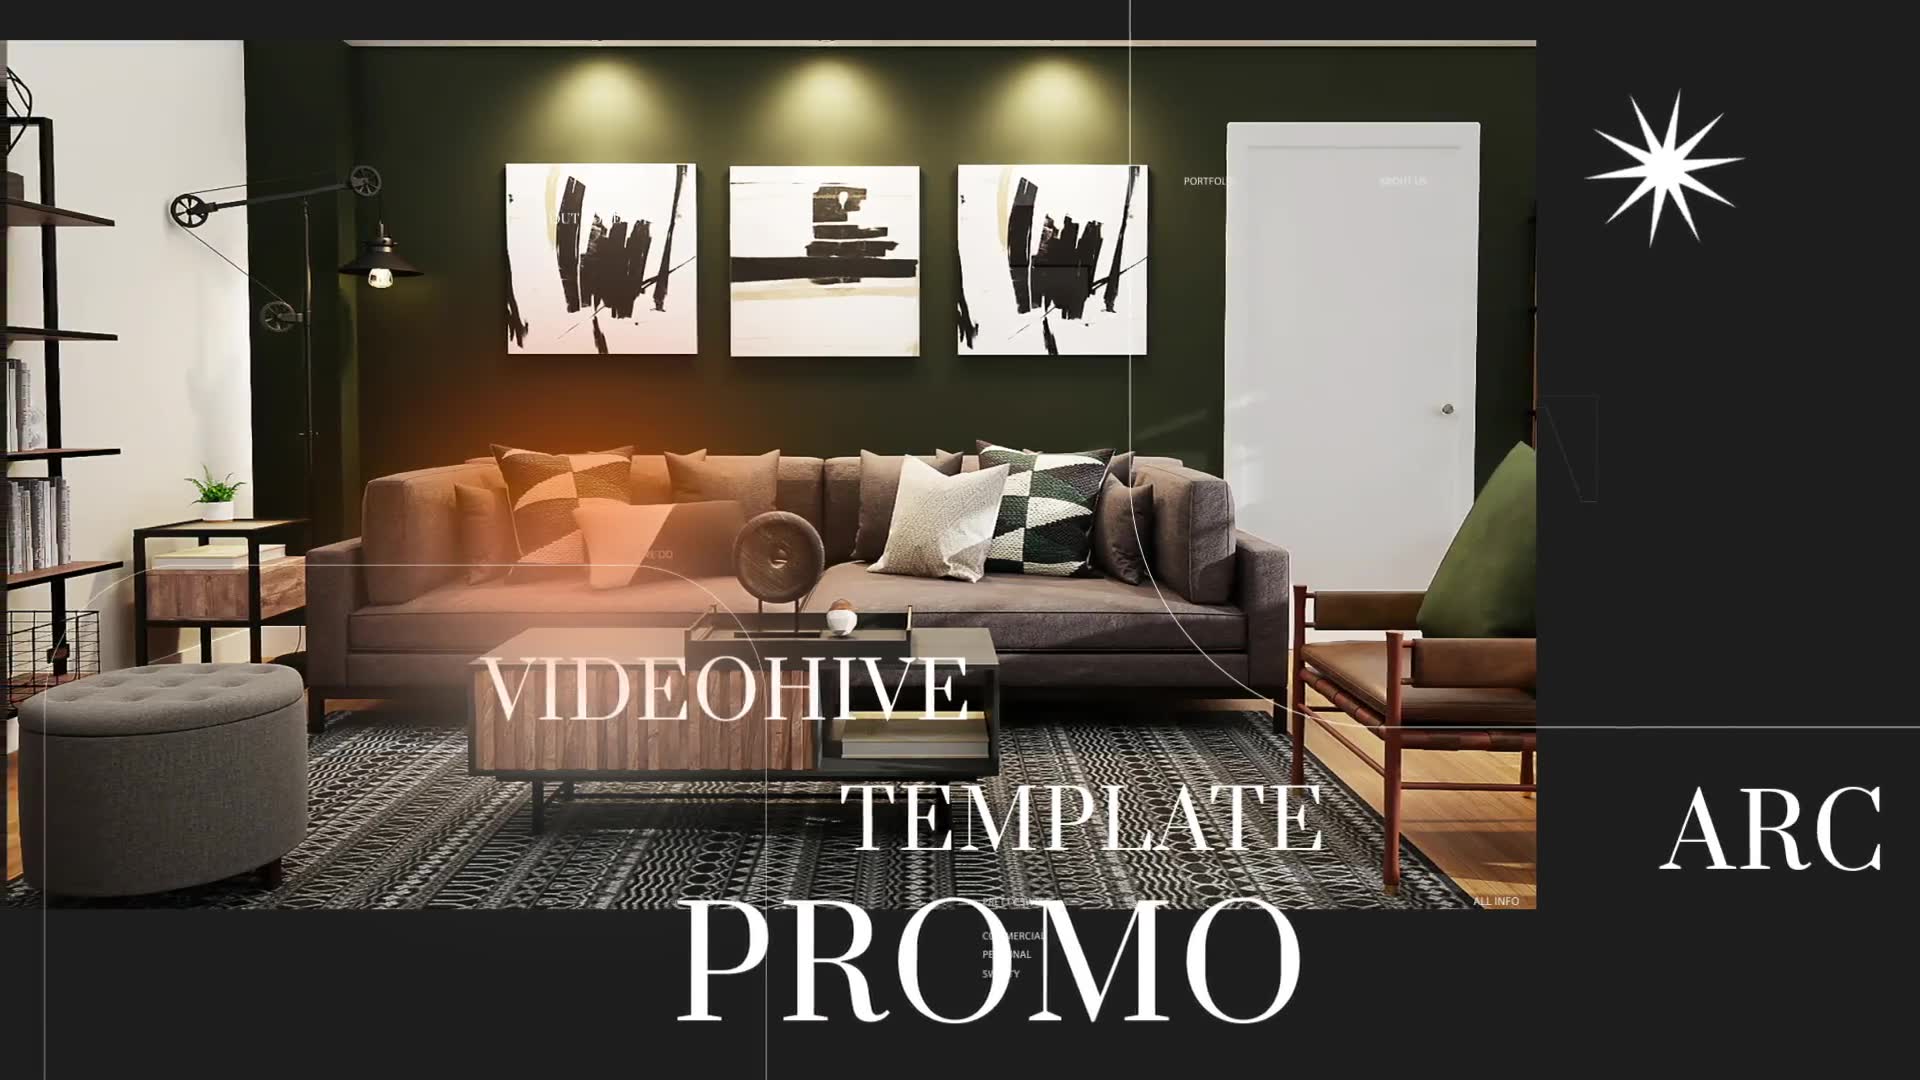 Elegant Magazine Promo | Premiere Pro Videohive 37169575 Premiere Pro Image 9